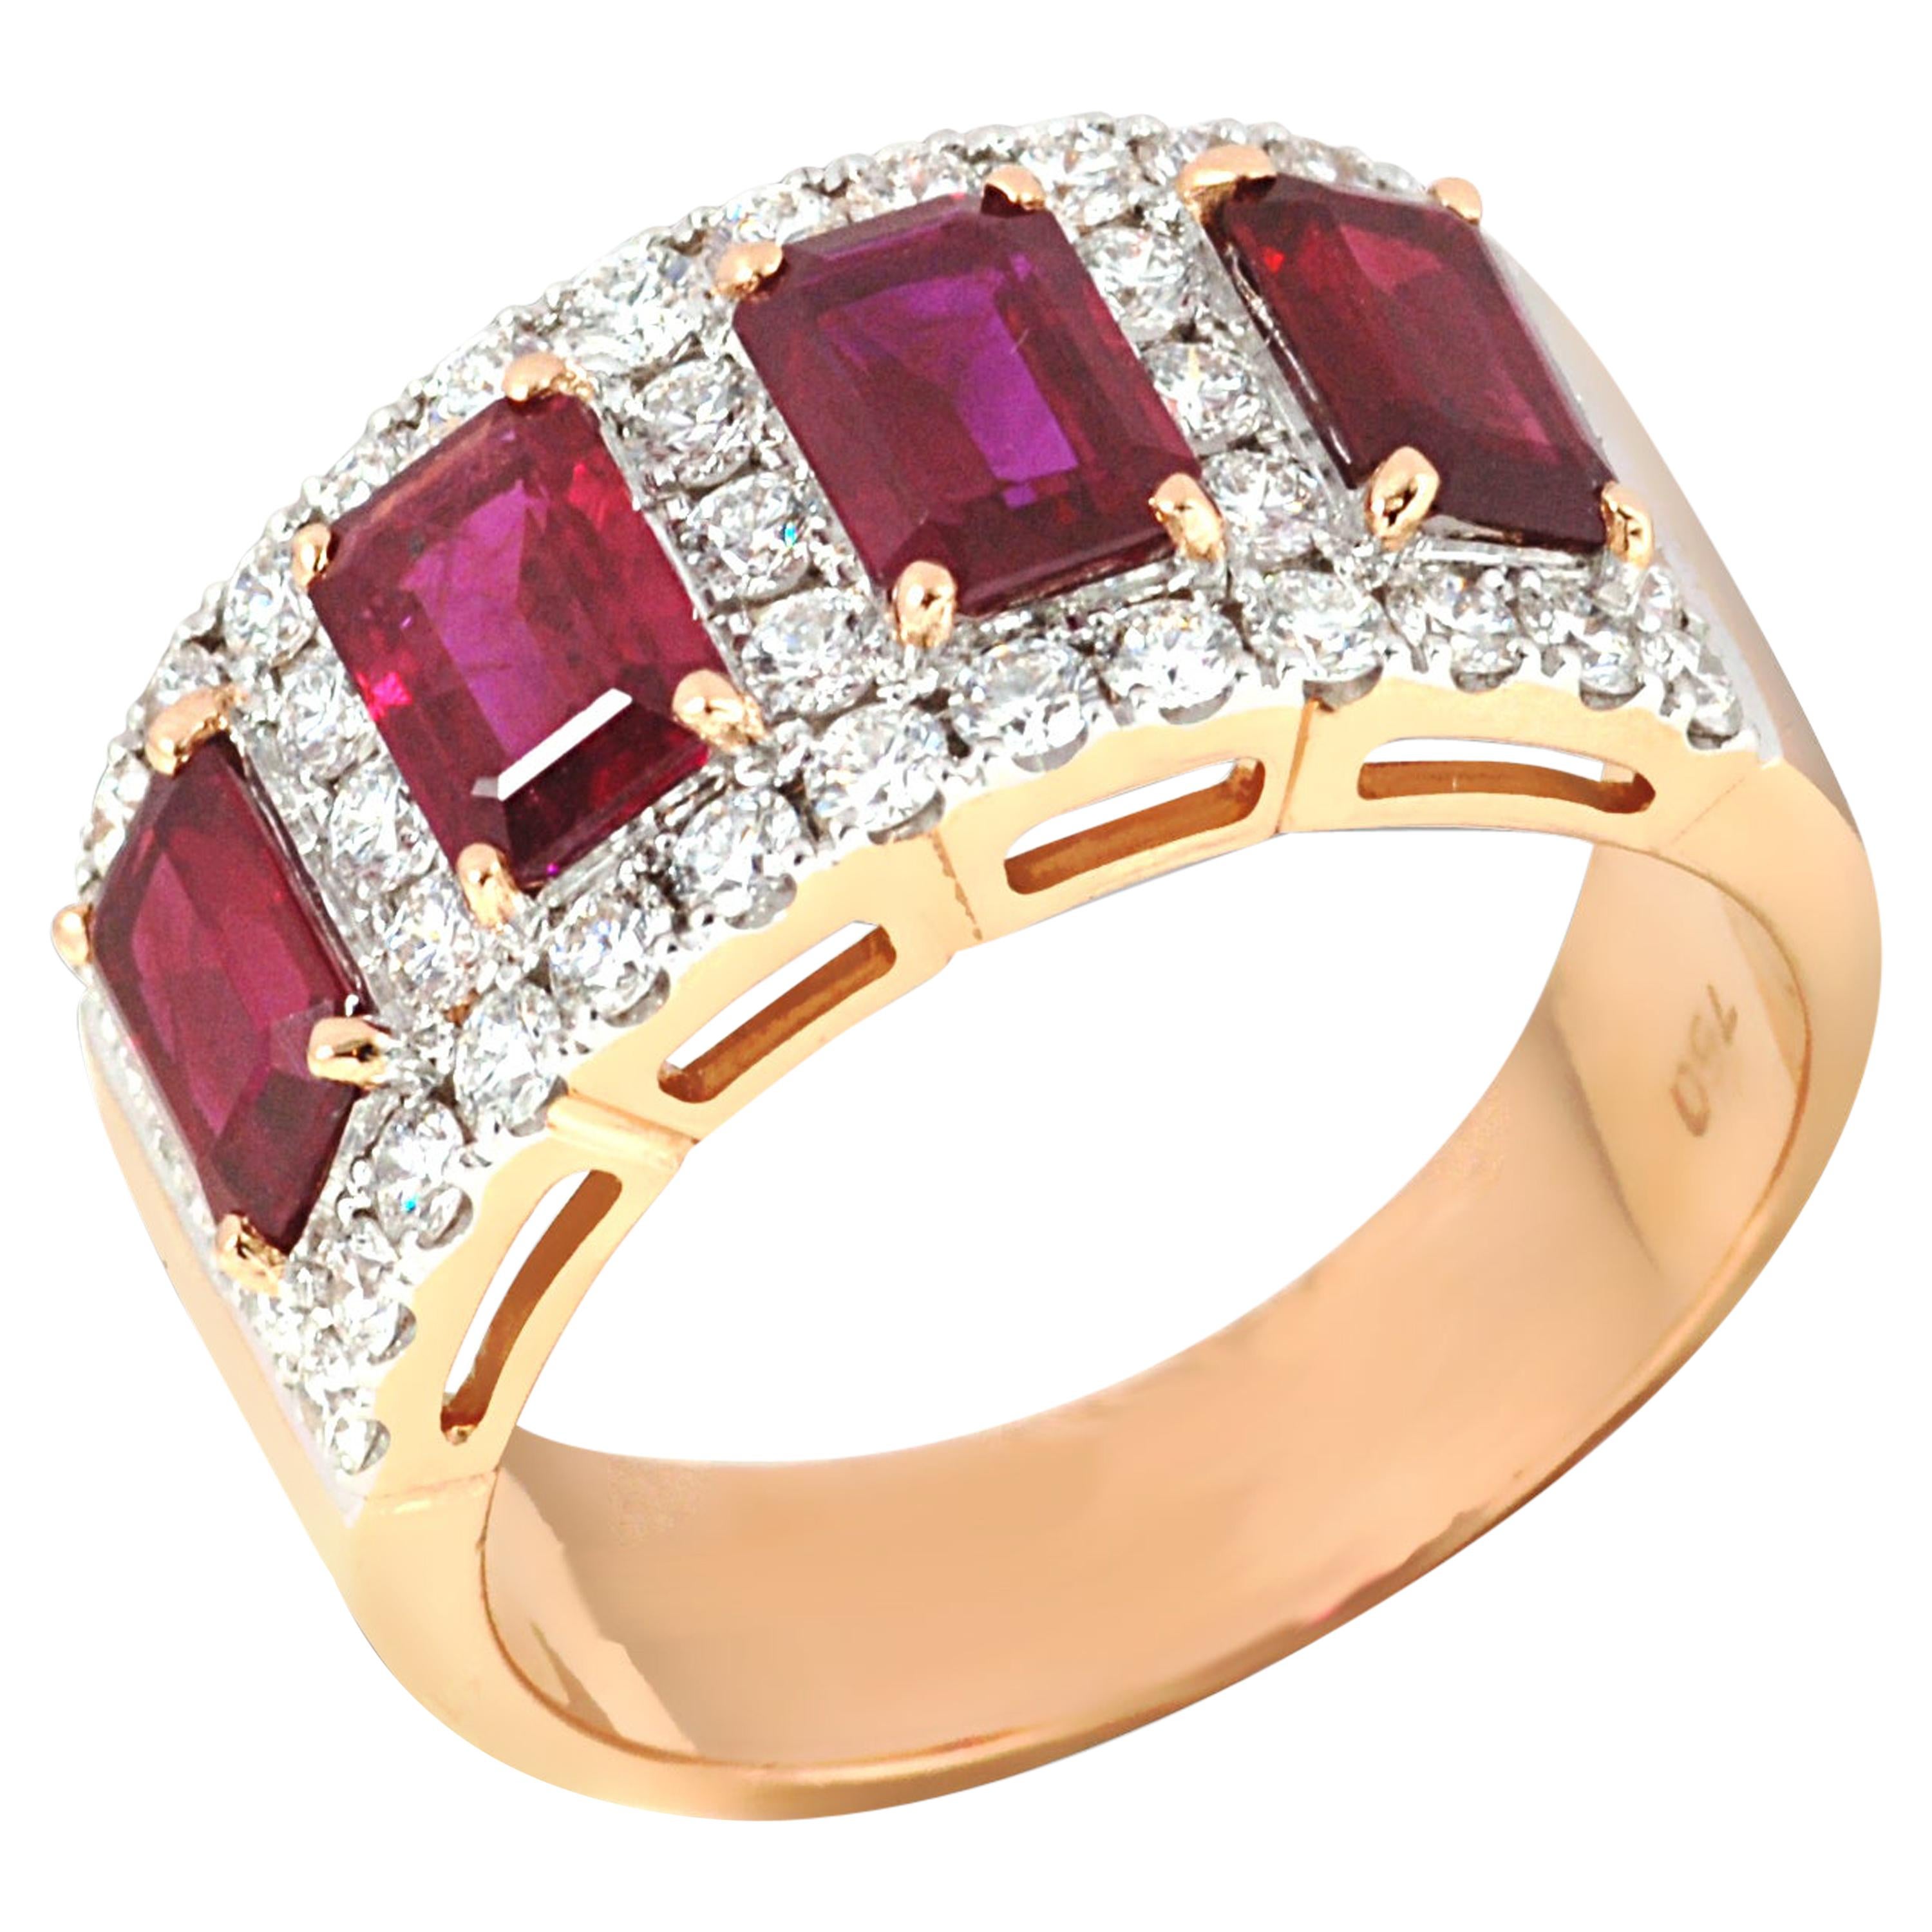 Ruby 2.59 Carat with Diamonds 0.82 Carat Ring Set in 18 Karat Pink Gold